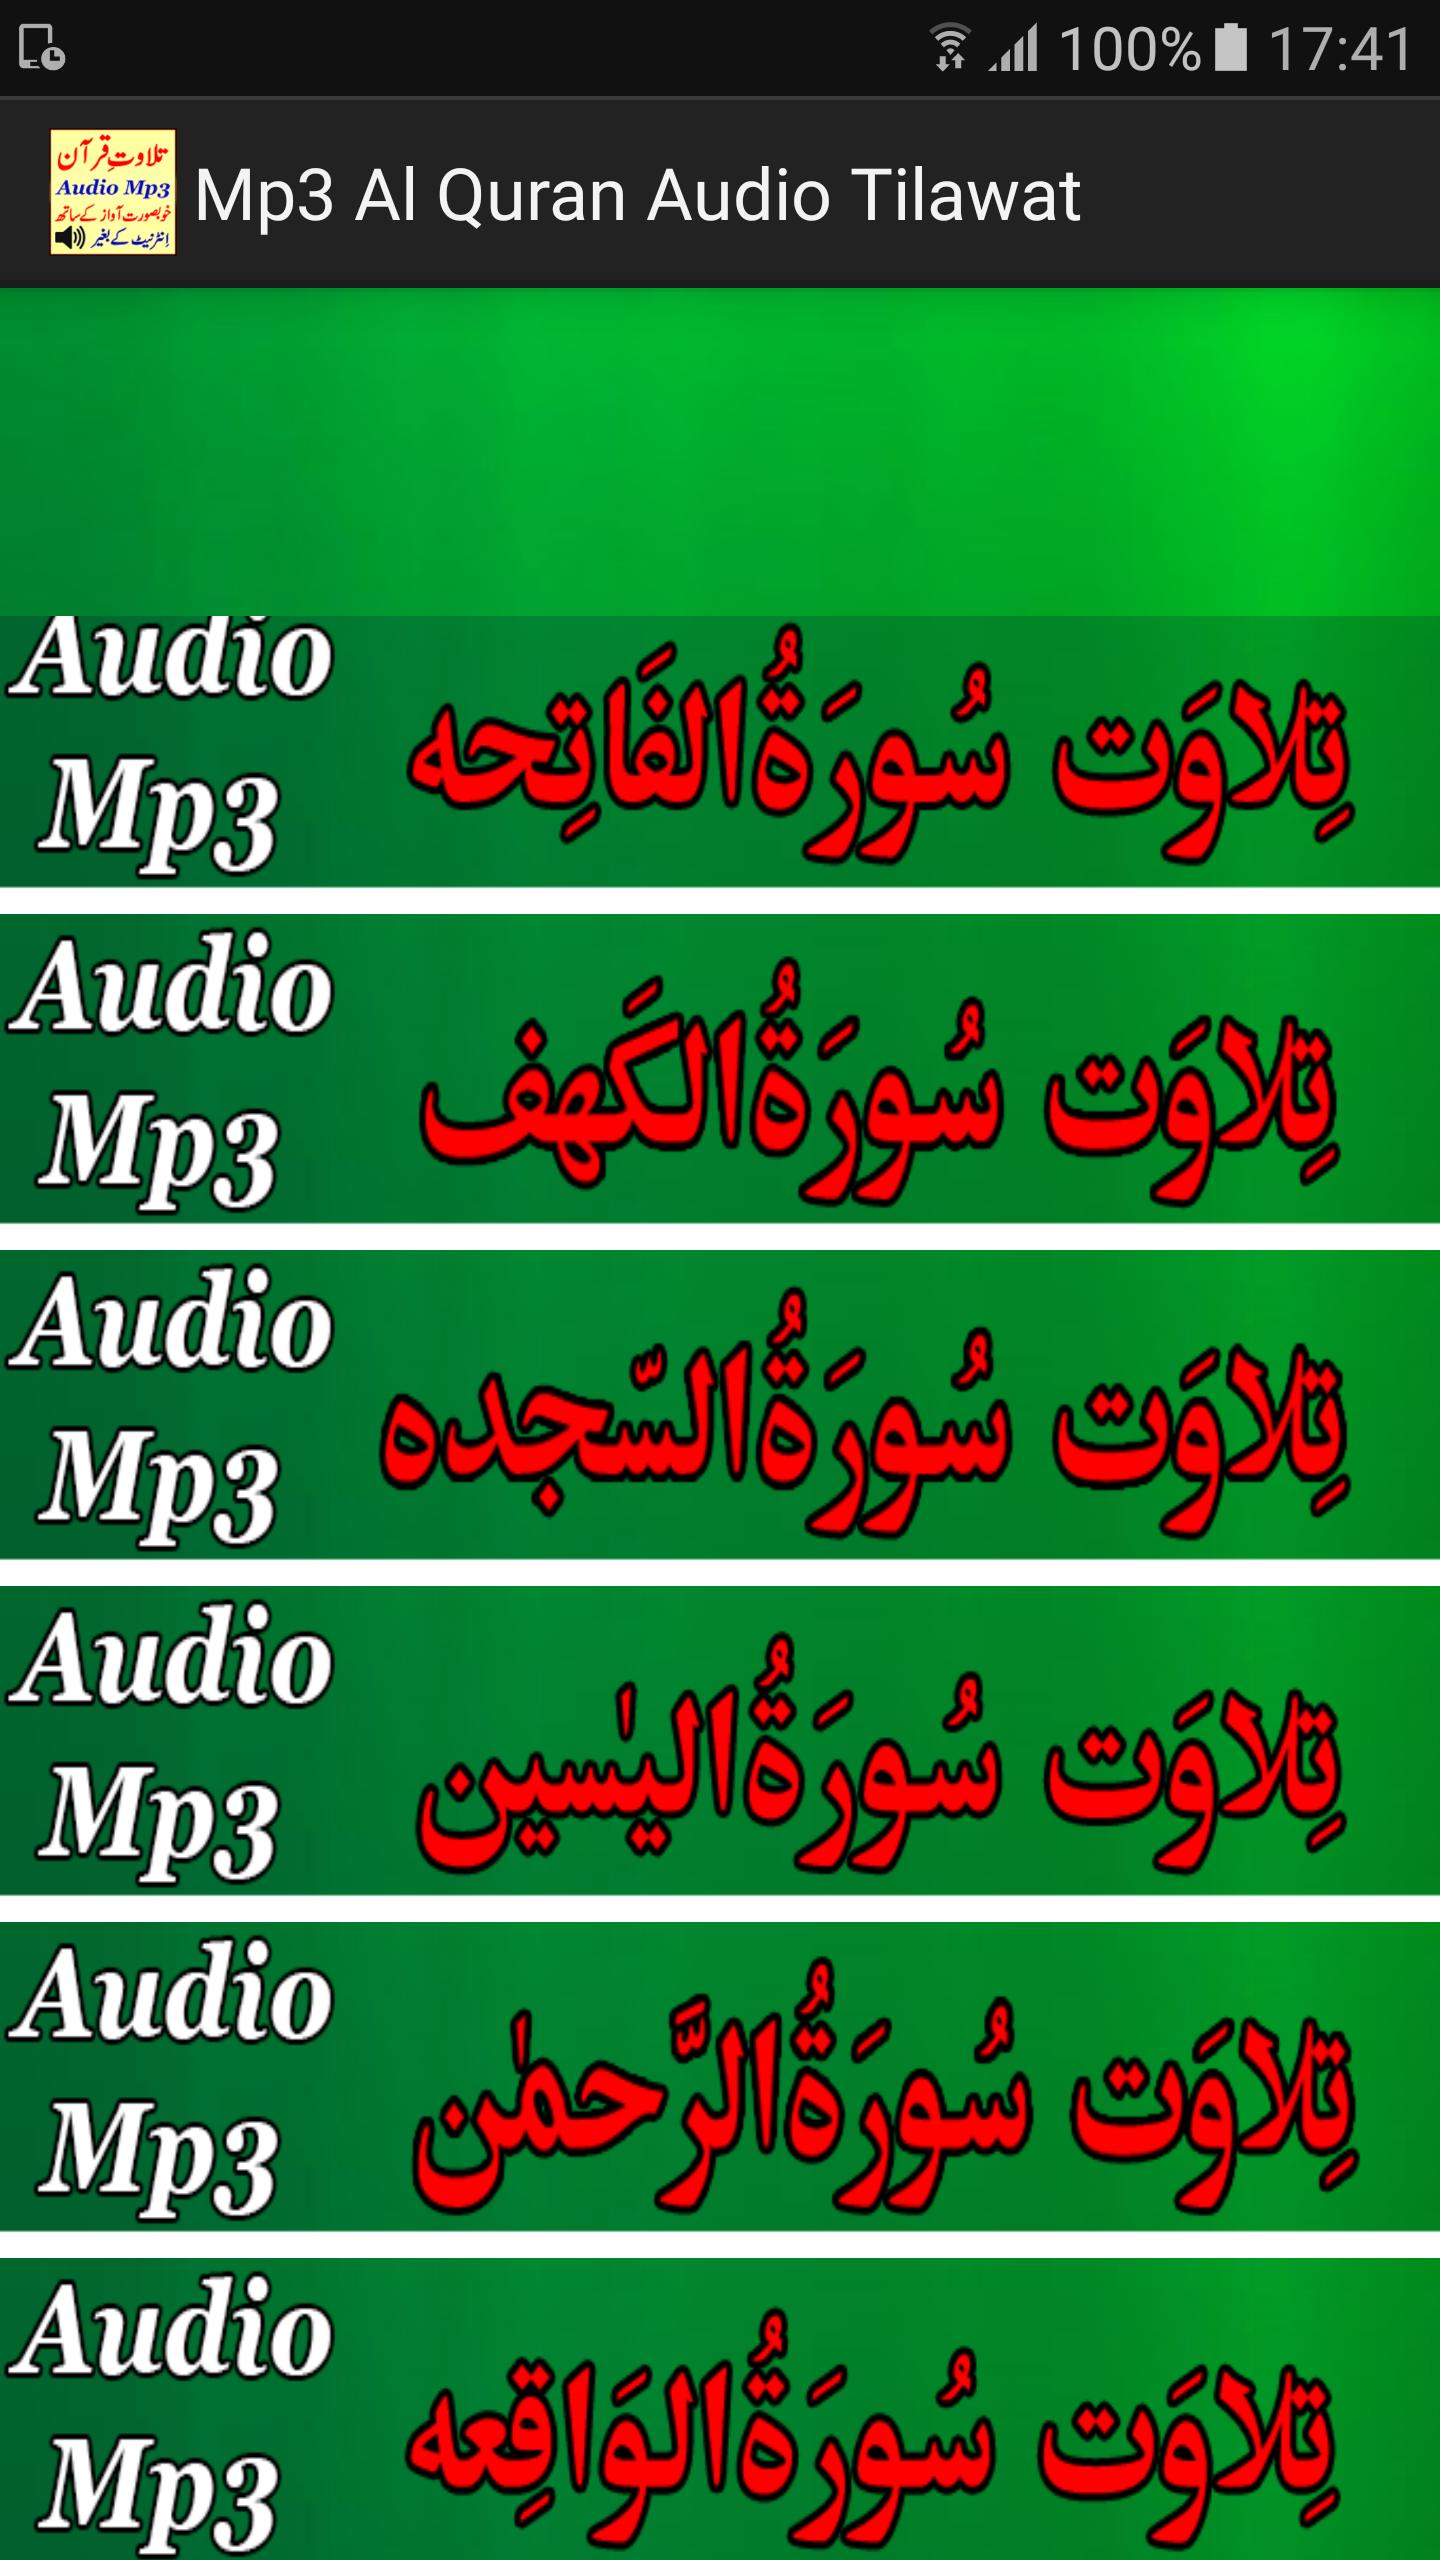 Mp3 Al Quran Audio Tilawat for Android - APK Download